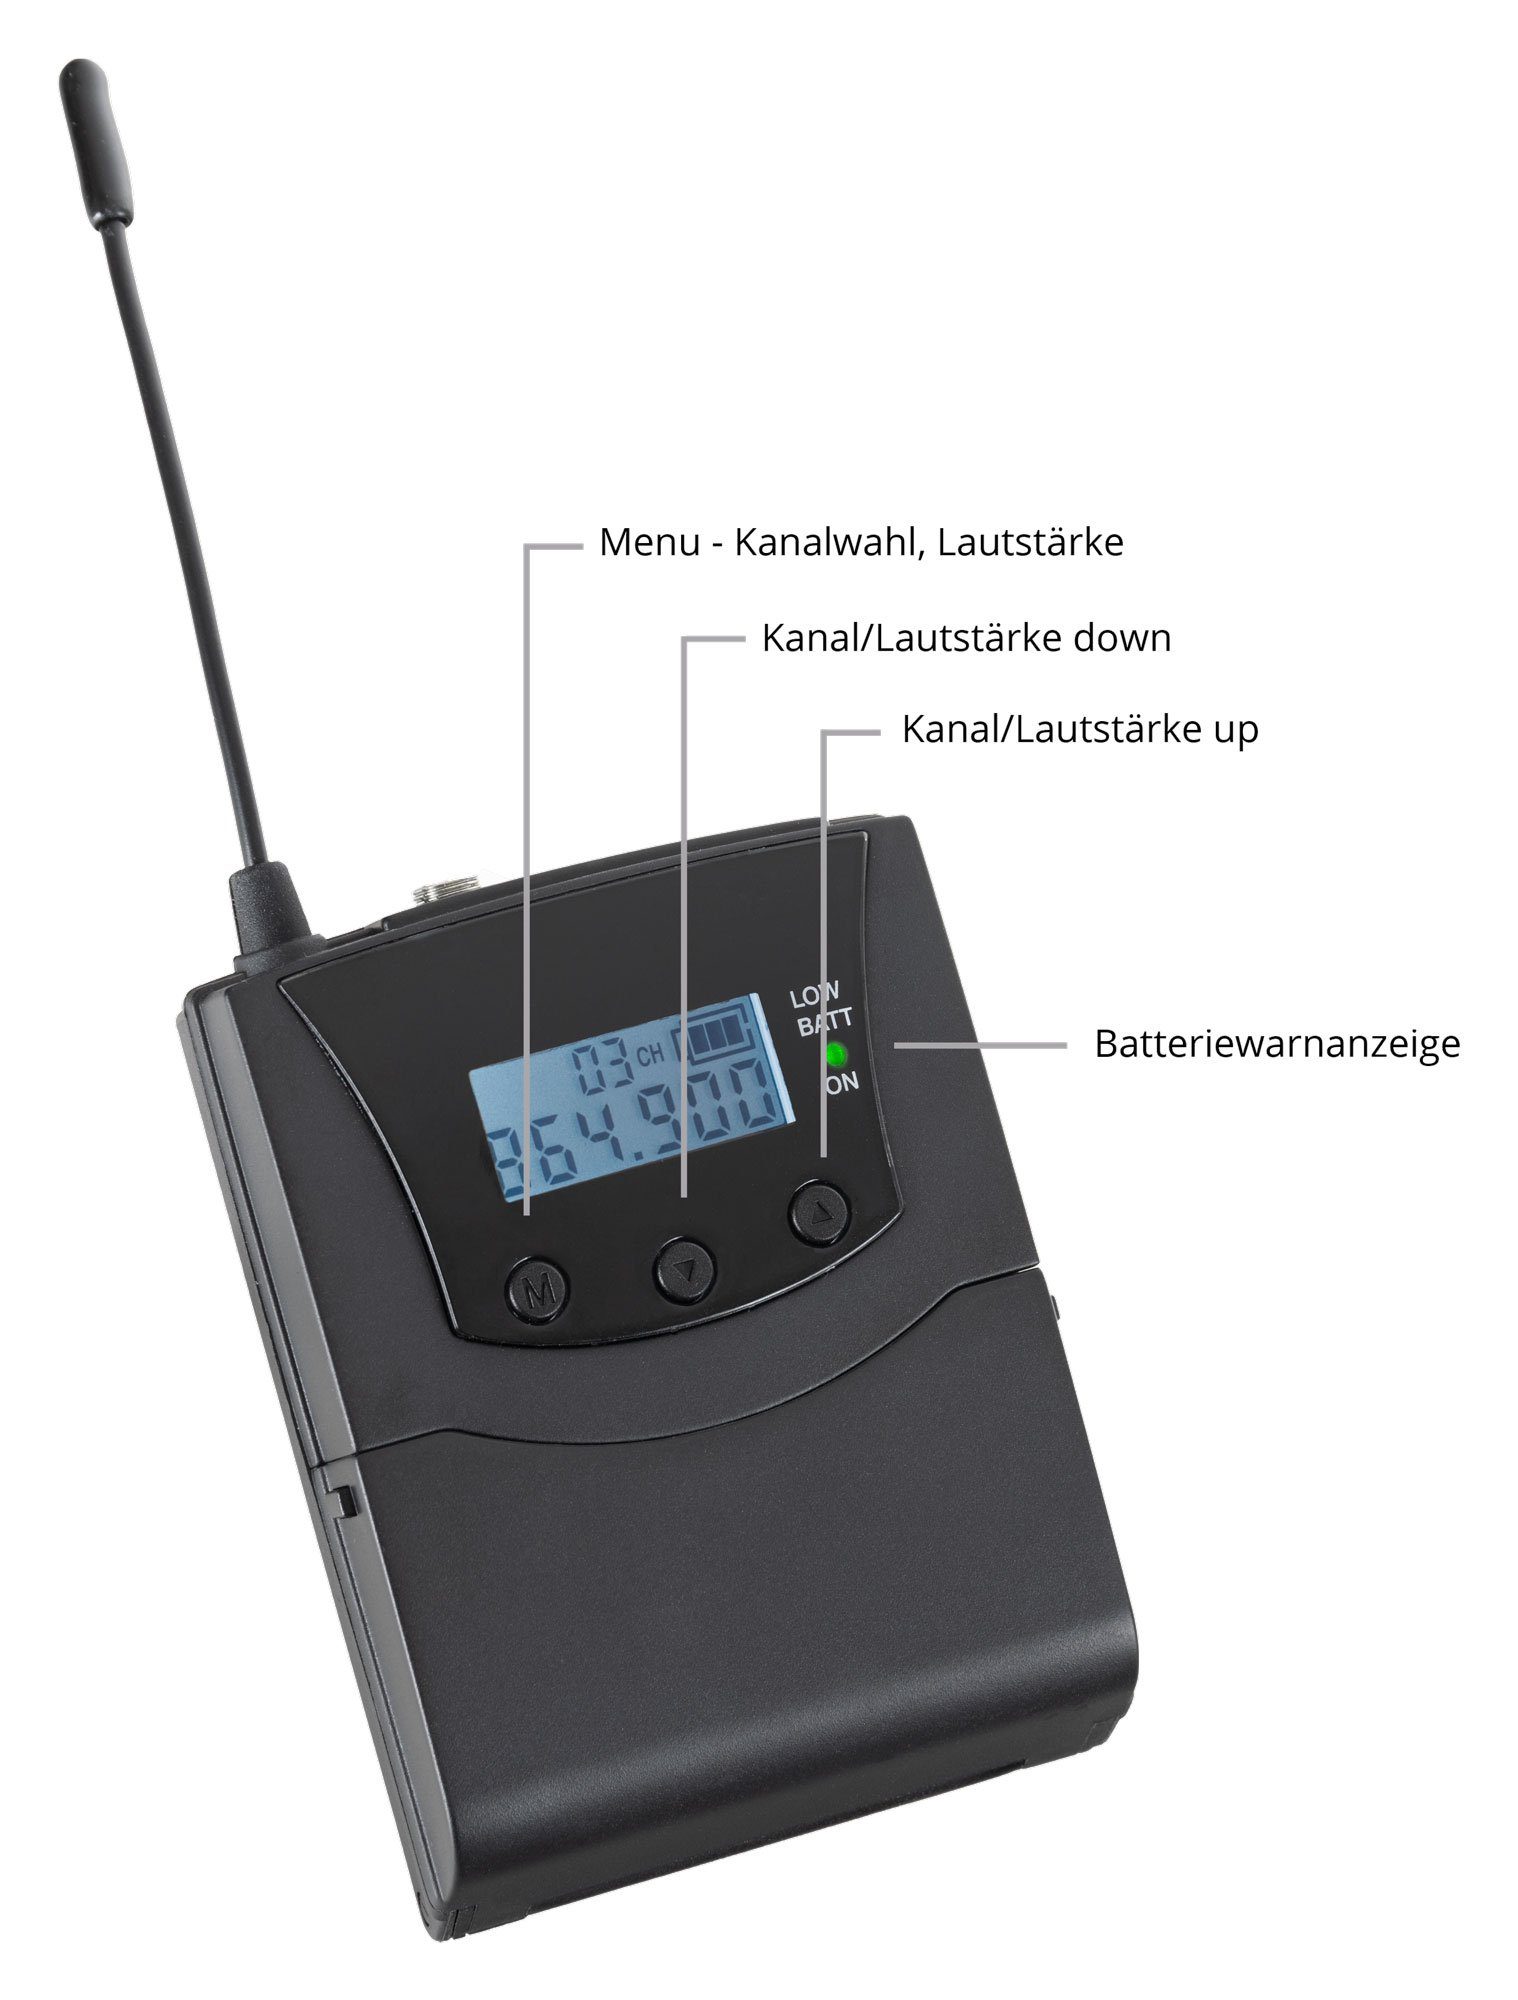 Beatfoxx Silent Verwendung handelsüblichen jedem 3 V2 mit Kopfhörer) Guide empfangbare Bodypack-Receiver UHF-Technik, Funk-Kopfhörer (Stereo Funk-Empfänger mit Kanäle, SDR-BP30 zur